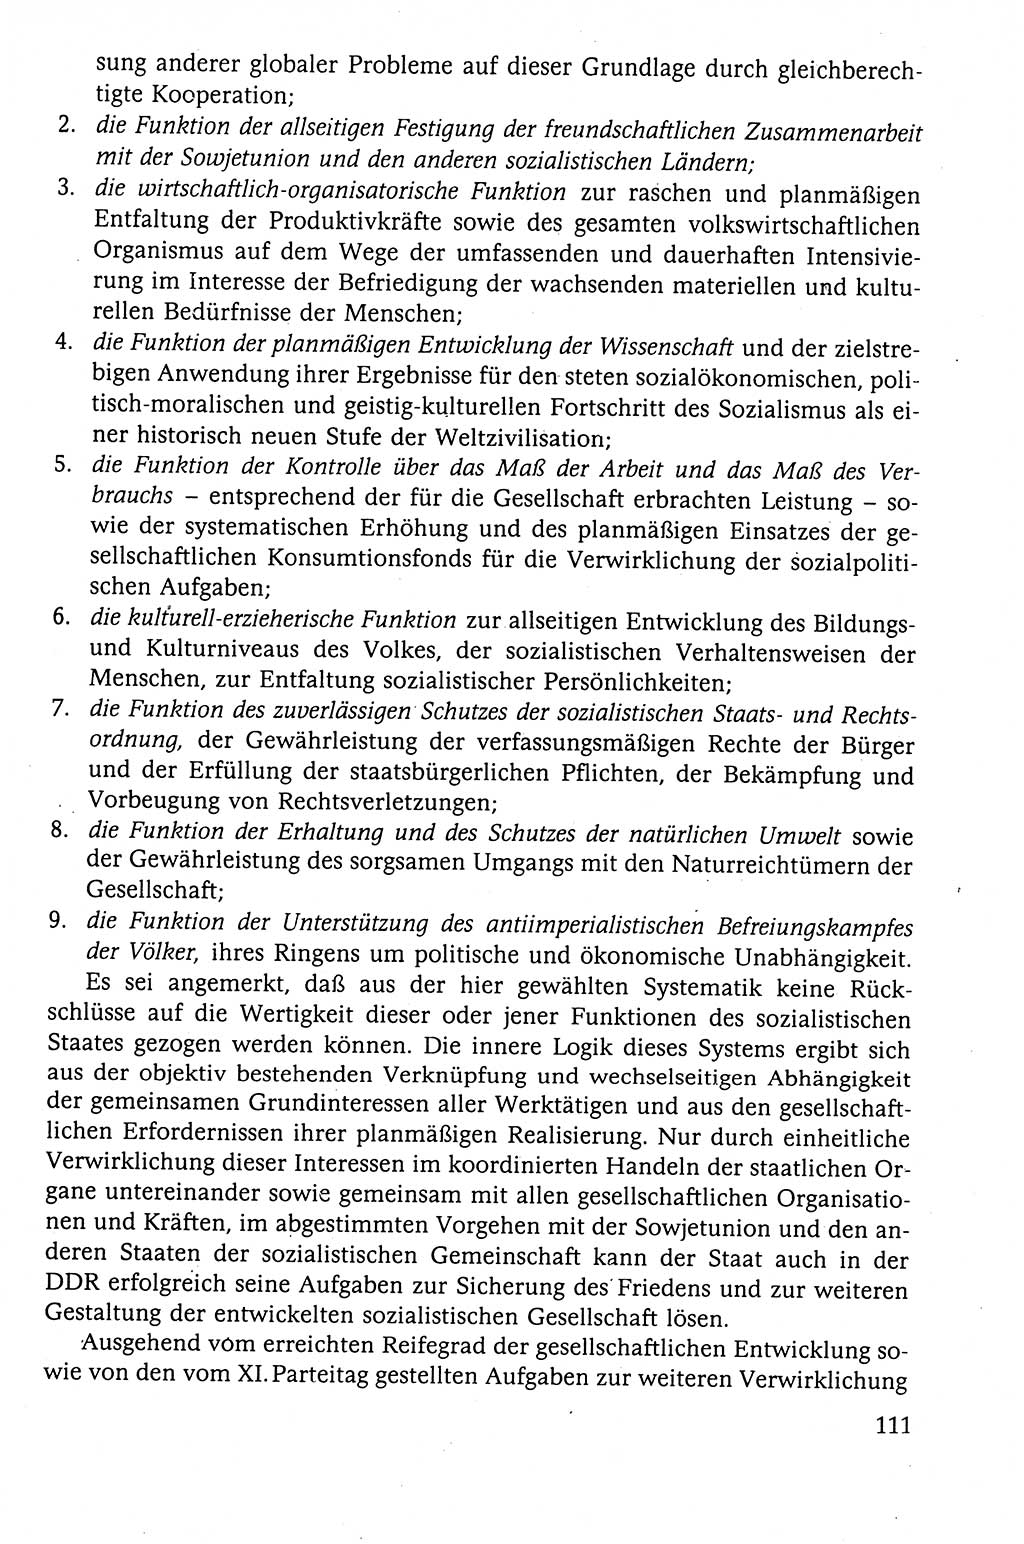 Der Staat im politischen System der DDR (Deutsche Demokratische Republik) 1986, Seite 111 (St. pol. Sys. DDR 1986, S. 111)